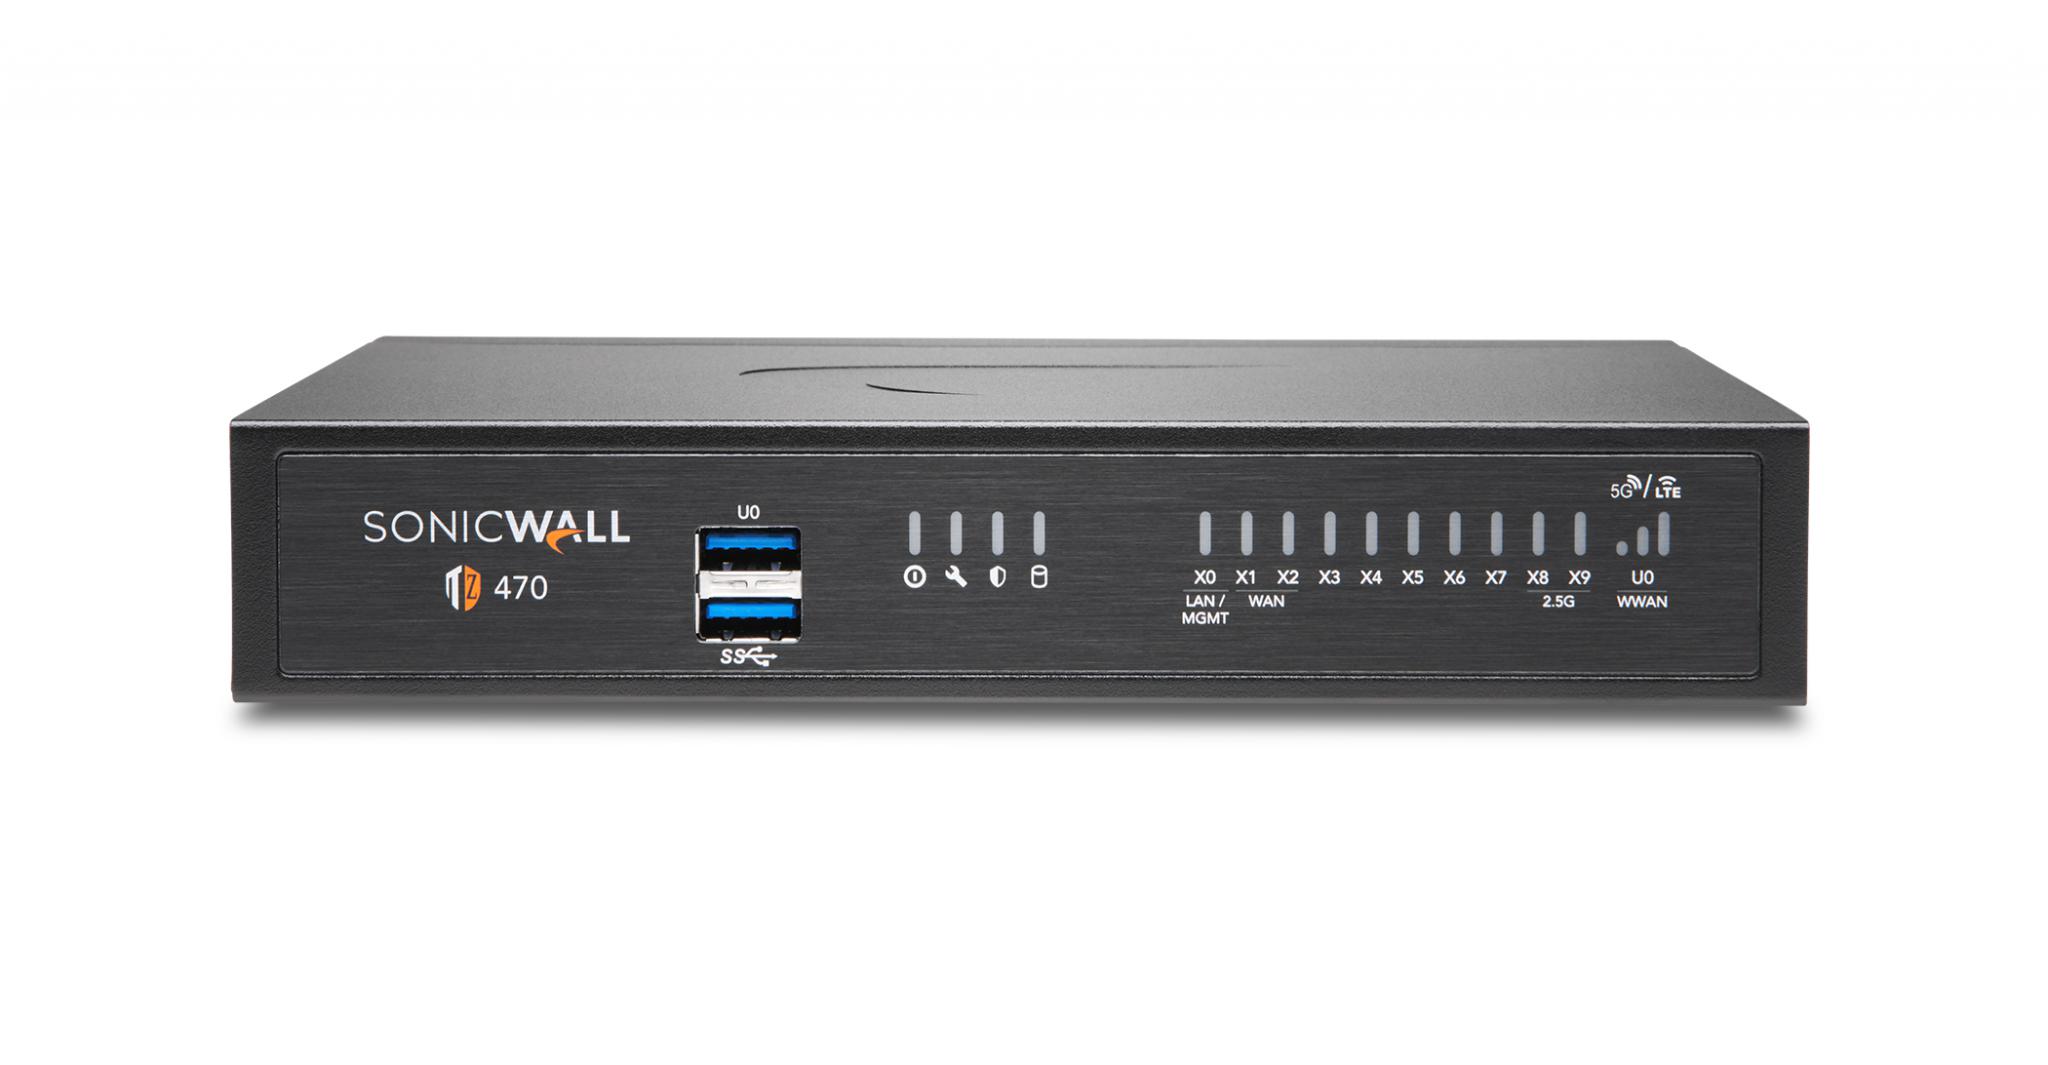 Firewall SonicWall model TZ470 8xGbE 2xUSB 3.0 firewall throughput 3.5Gbps, IPS throughput 2.Gbps, VPN throughput 1.5Gbps, maxim 150 clienti SSL VPN, rackmount kit separat (02-SSC-3113), PSU alimentator (36W), licenta Total Secure Advanced Edition (capture advanced threat, gateway antivirus